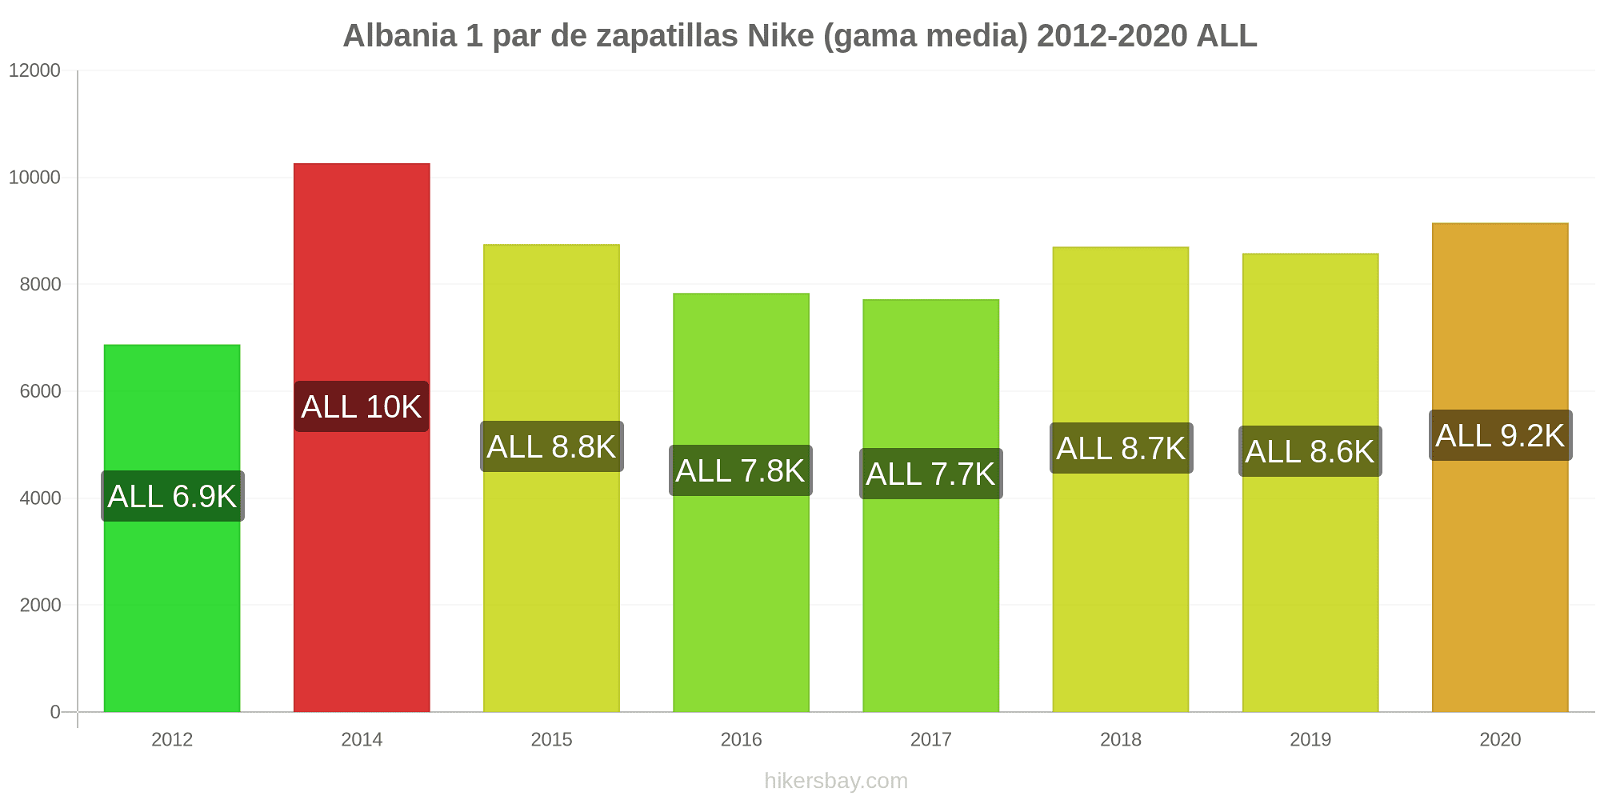 Albania cambios de precios 1 par de zapatillas Nike (gama media) hikersbay.com